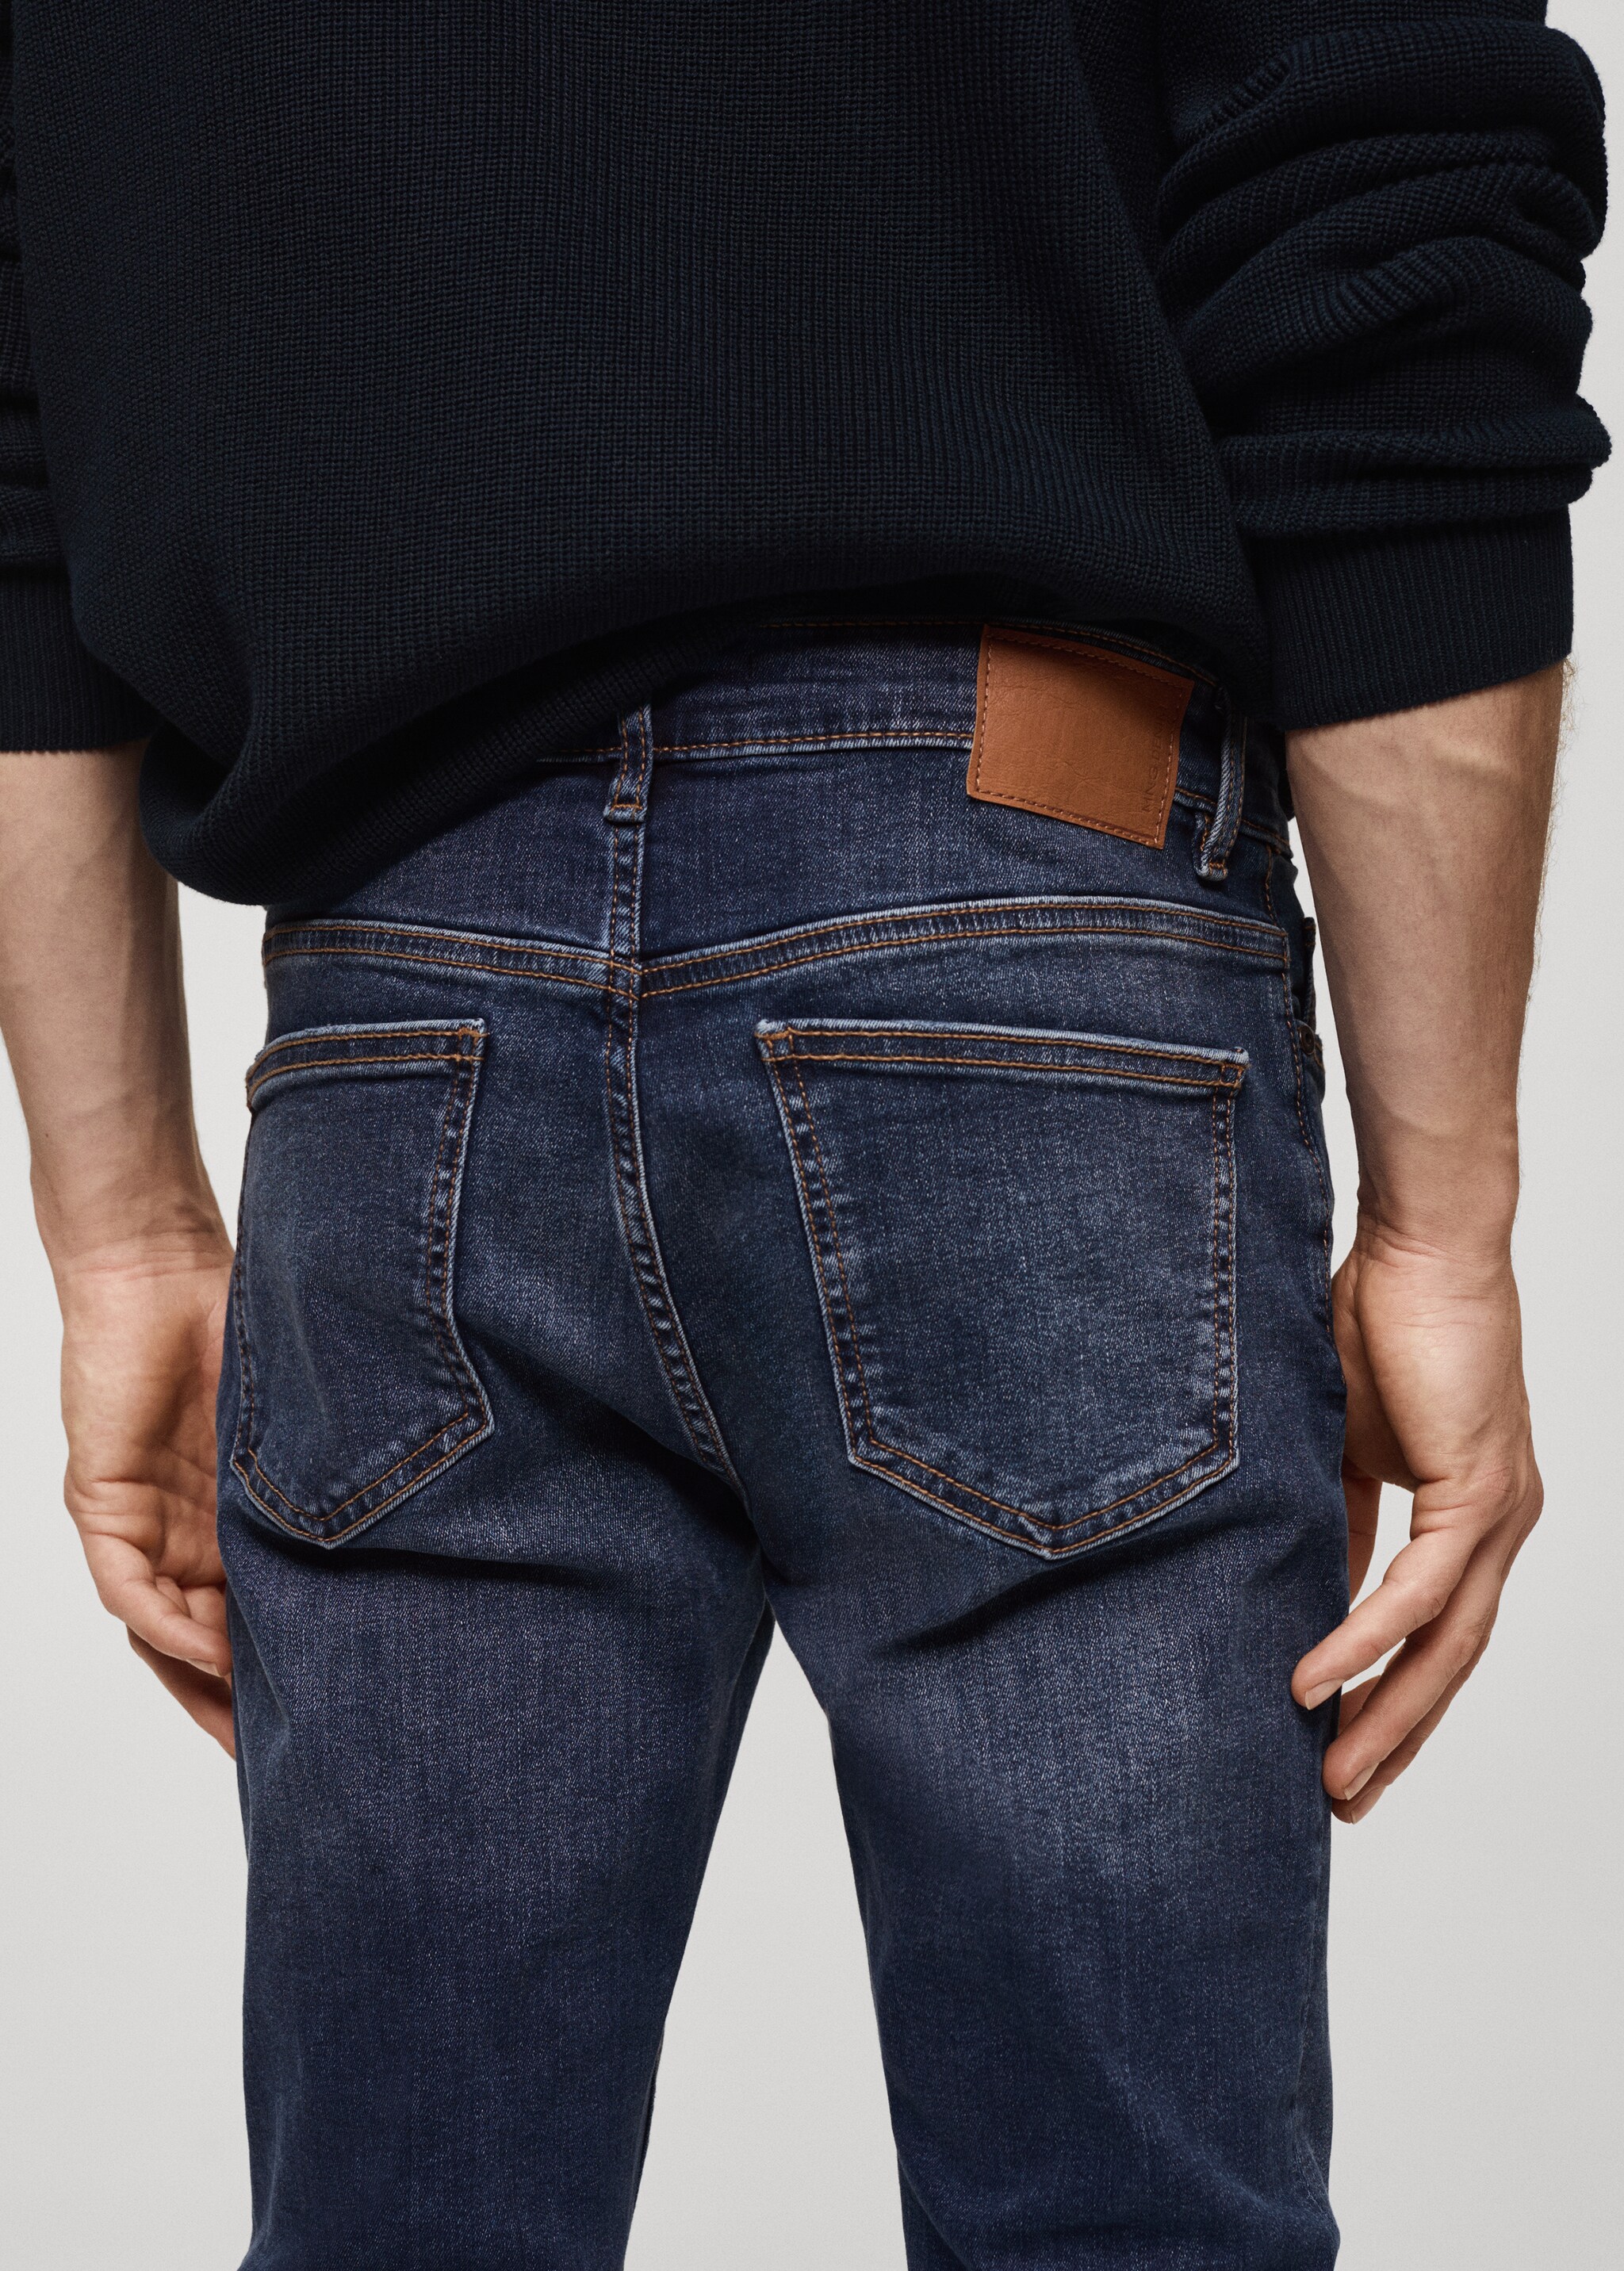 Jeans Jude skinny fit - Detalle del artículo 4